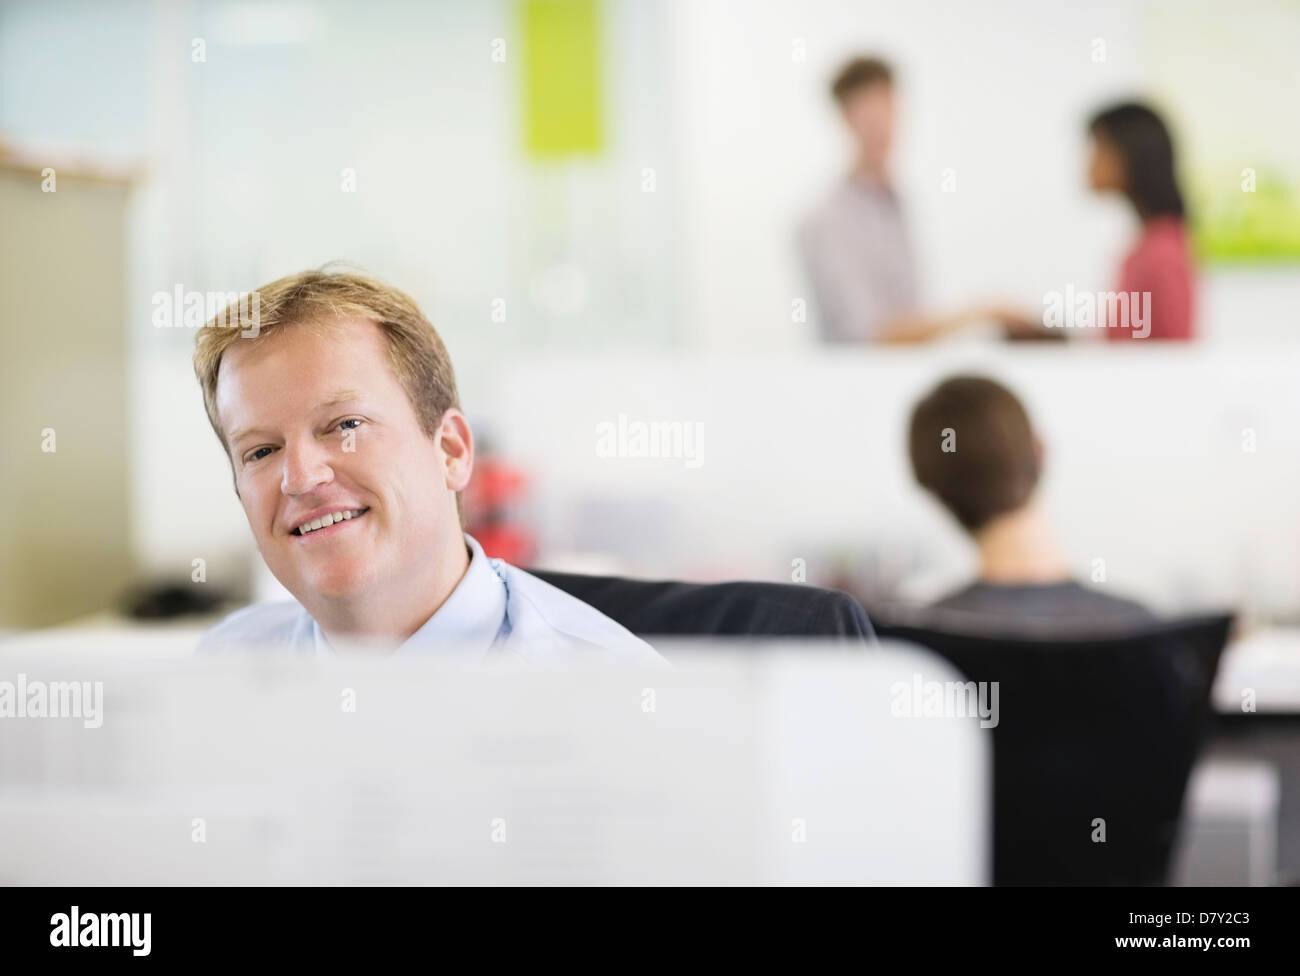 Businessman smiling at desk Banque D'Images